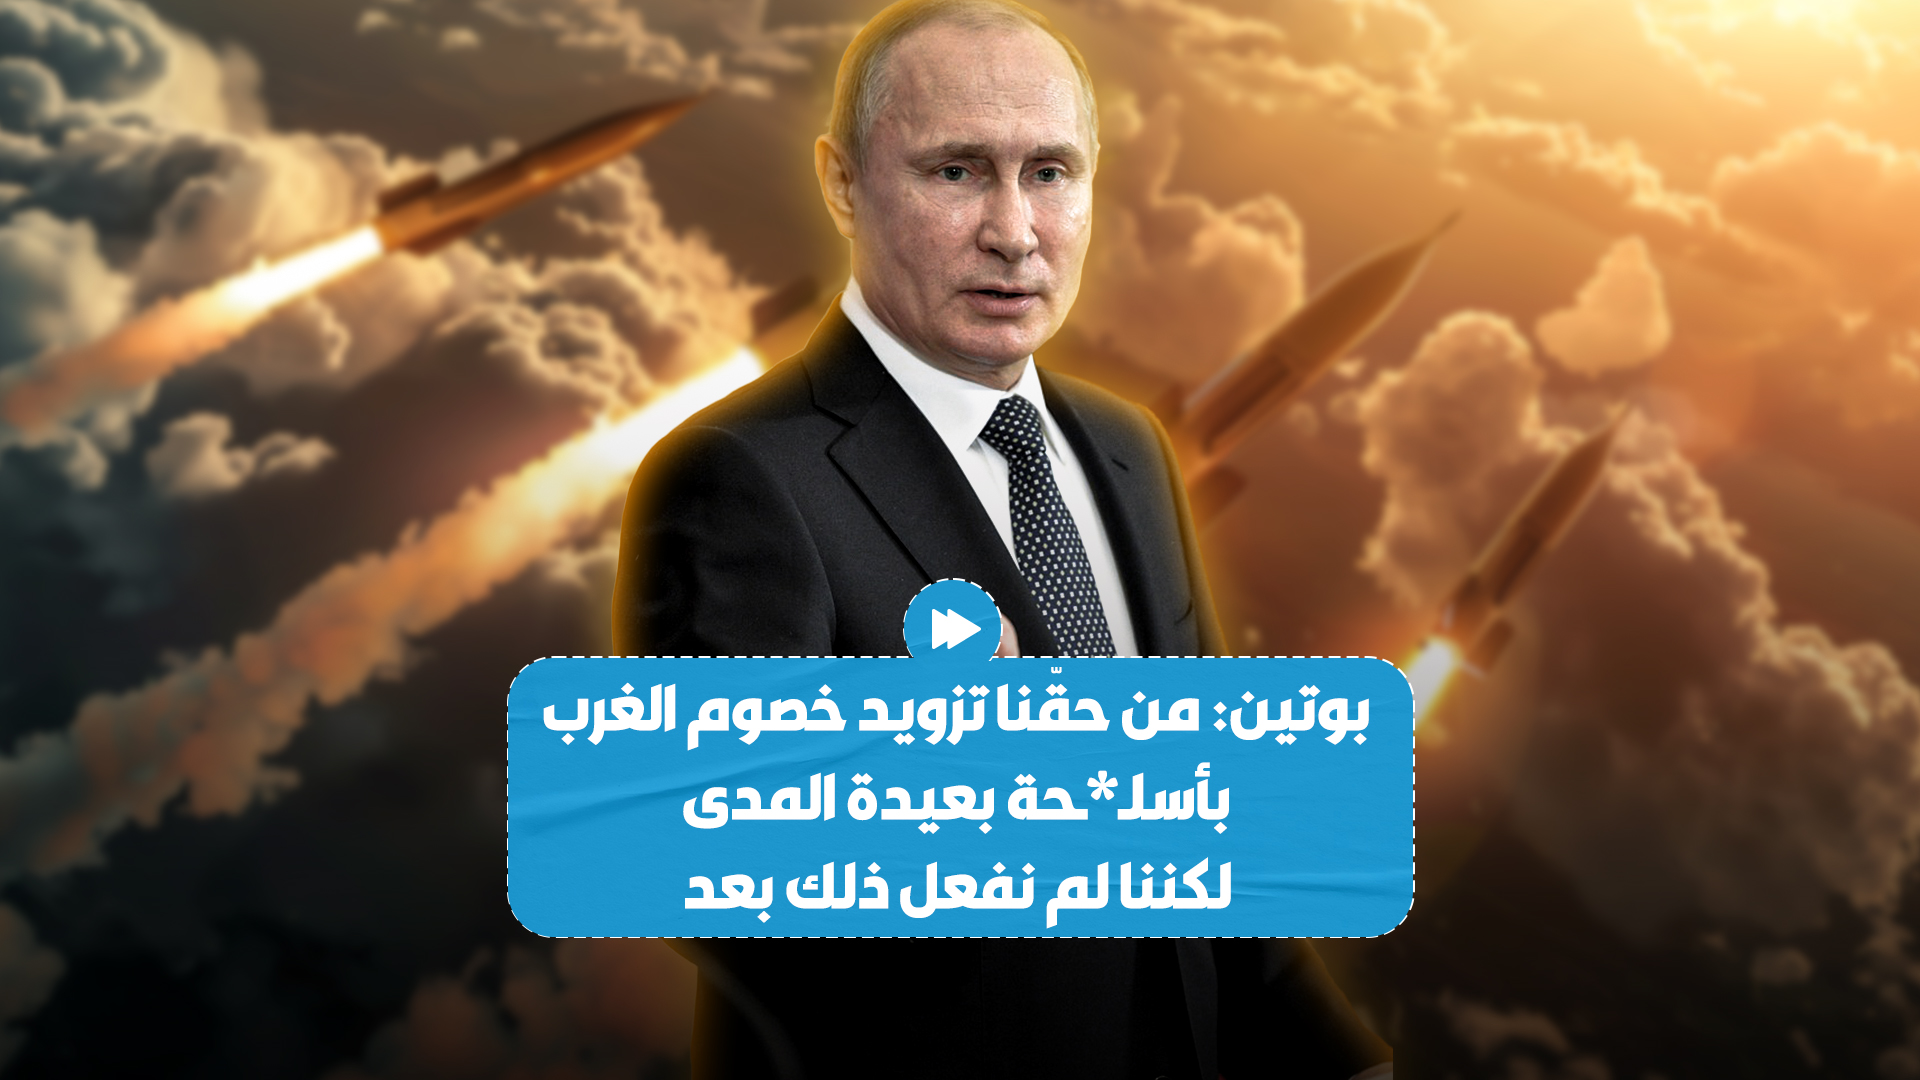 الرئيس الروسي فلاديمير بوتين يؤكد أن روسيا تحتفظ بحقّ تزويد خصوم الغرب بأسـ*ـلحة بعيدة المدى